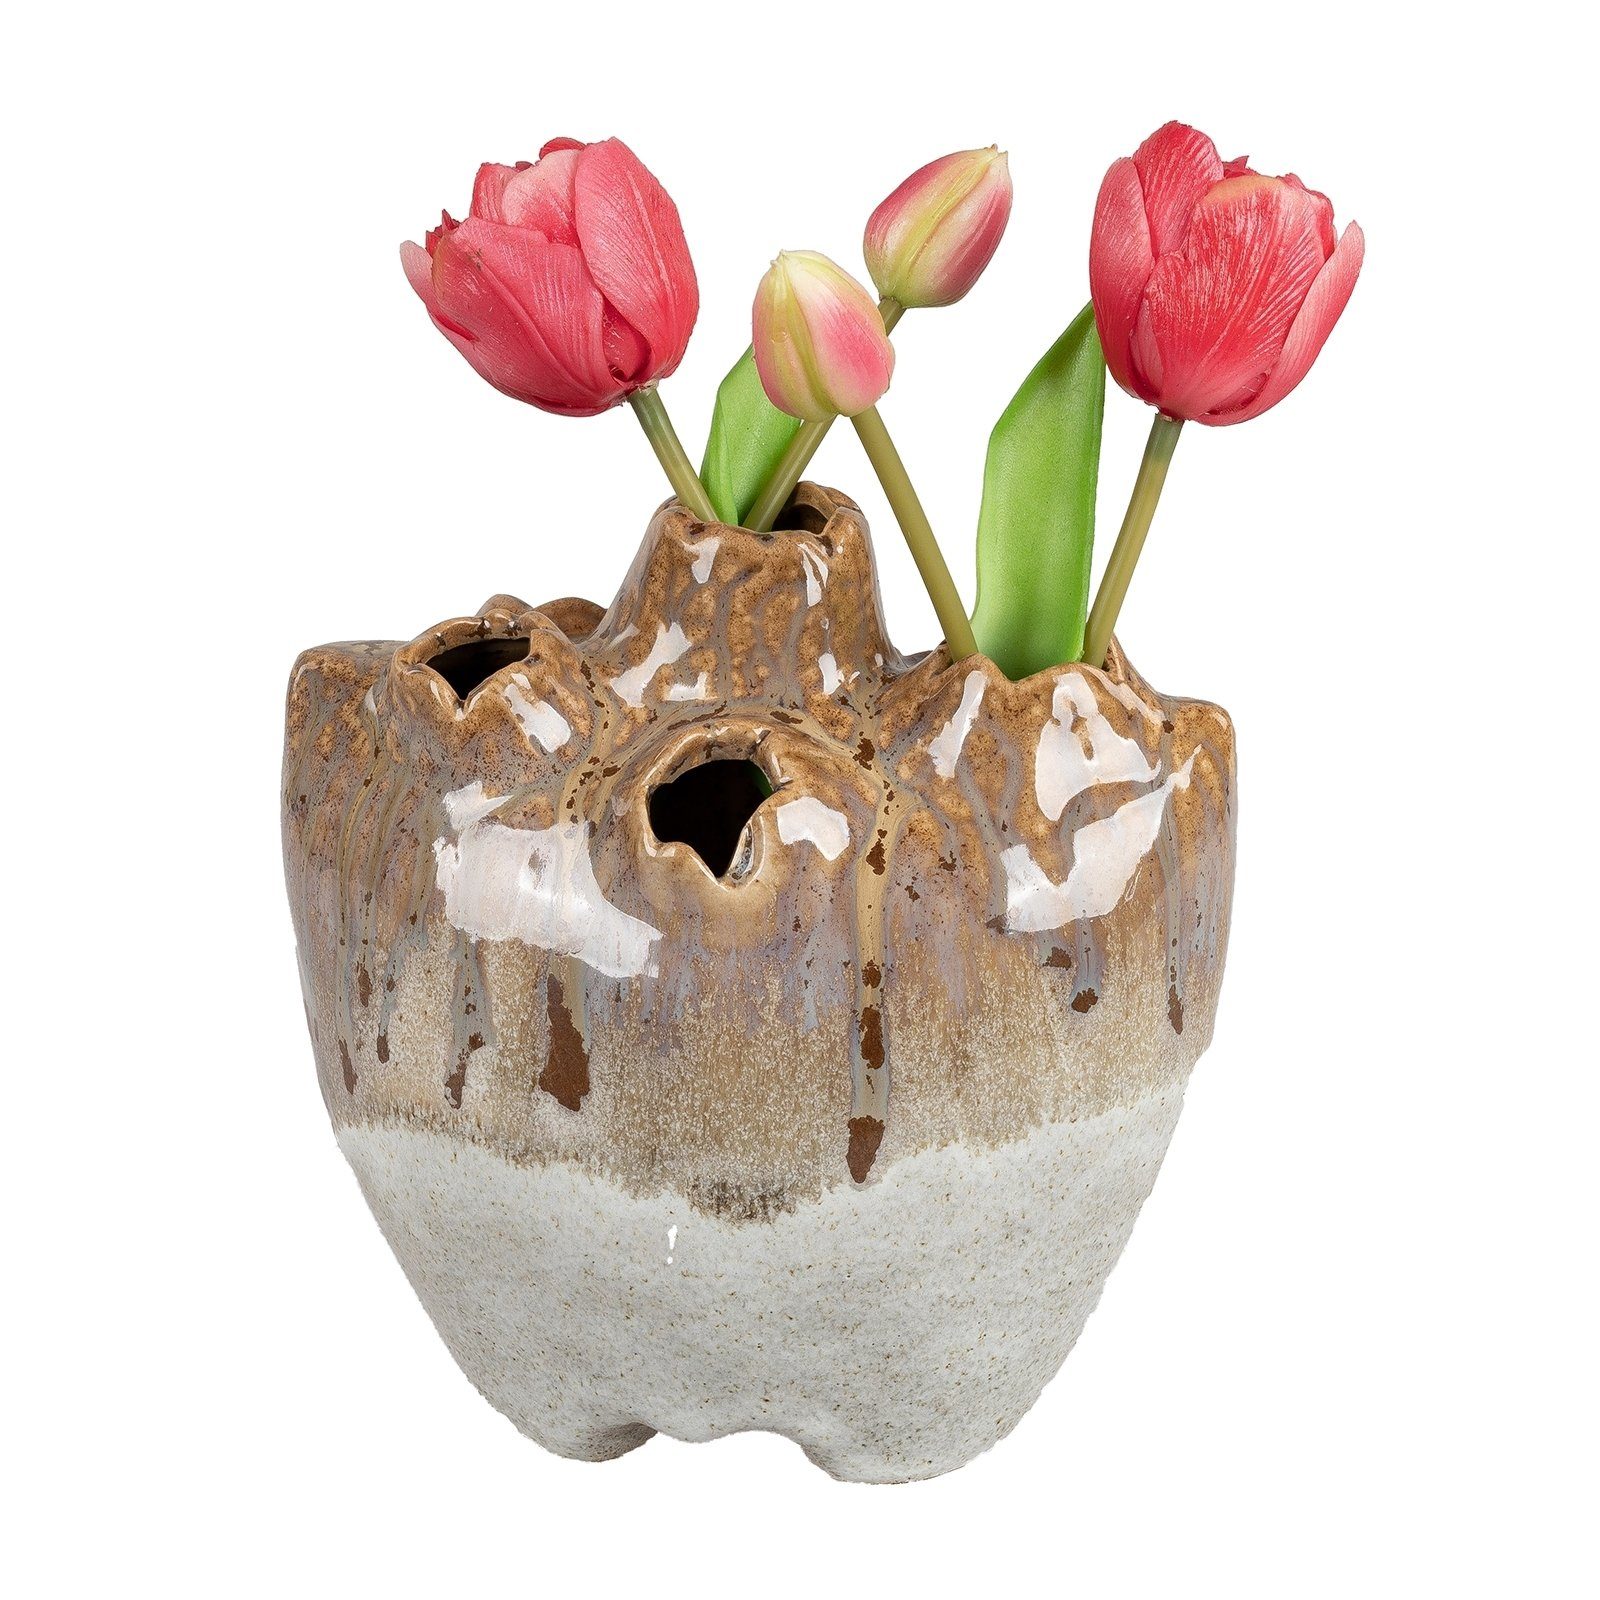 Tulpen Tulpenvase formano für Dekovase (1 Lochvase Lochvase Keramik St), Creme